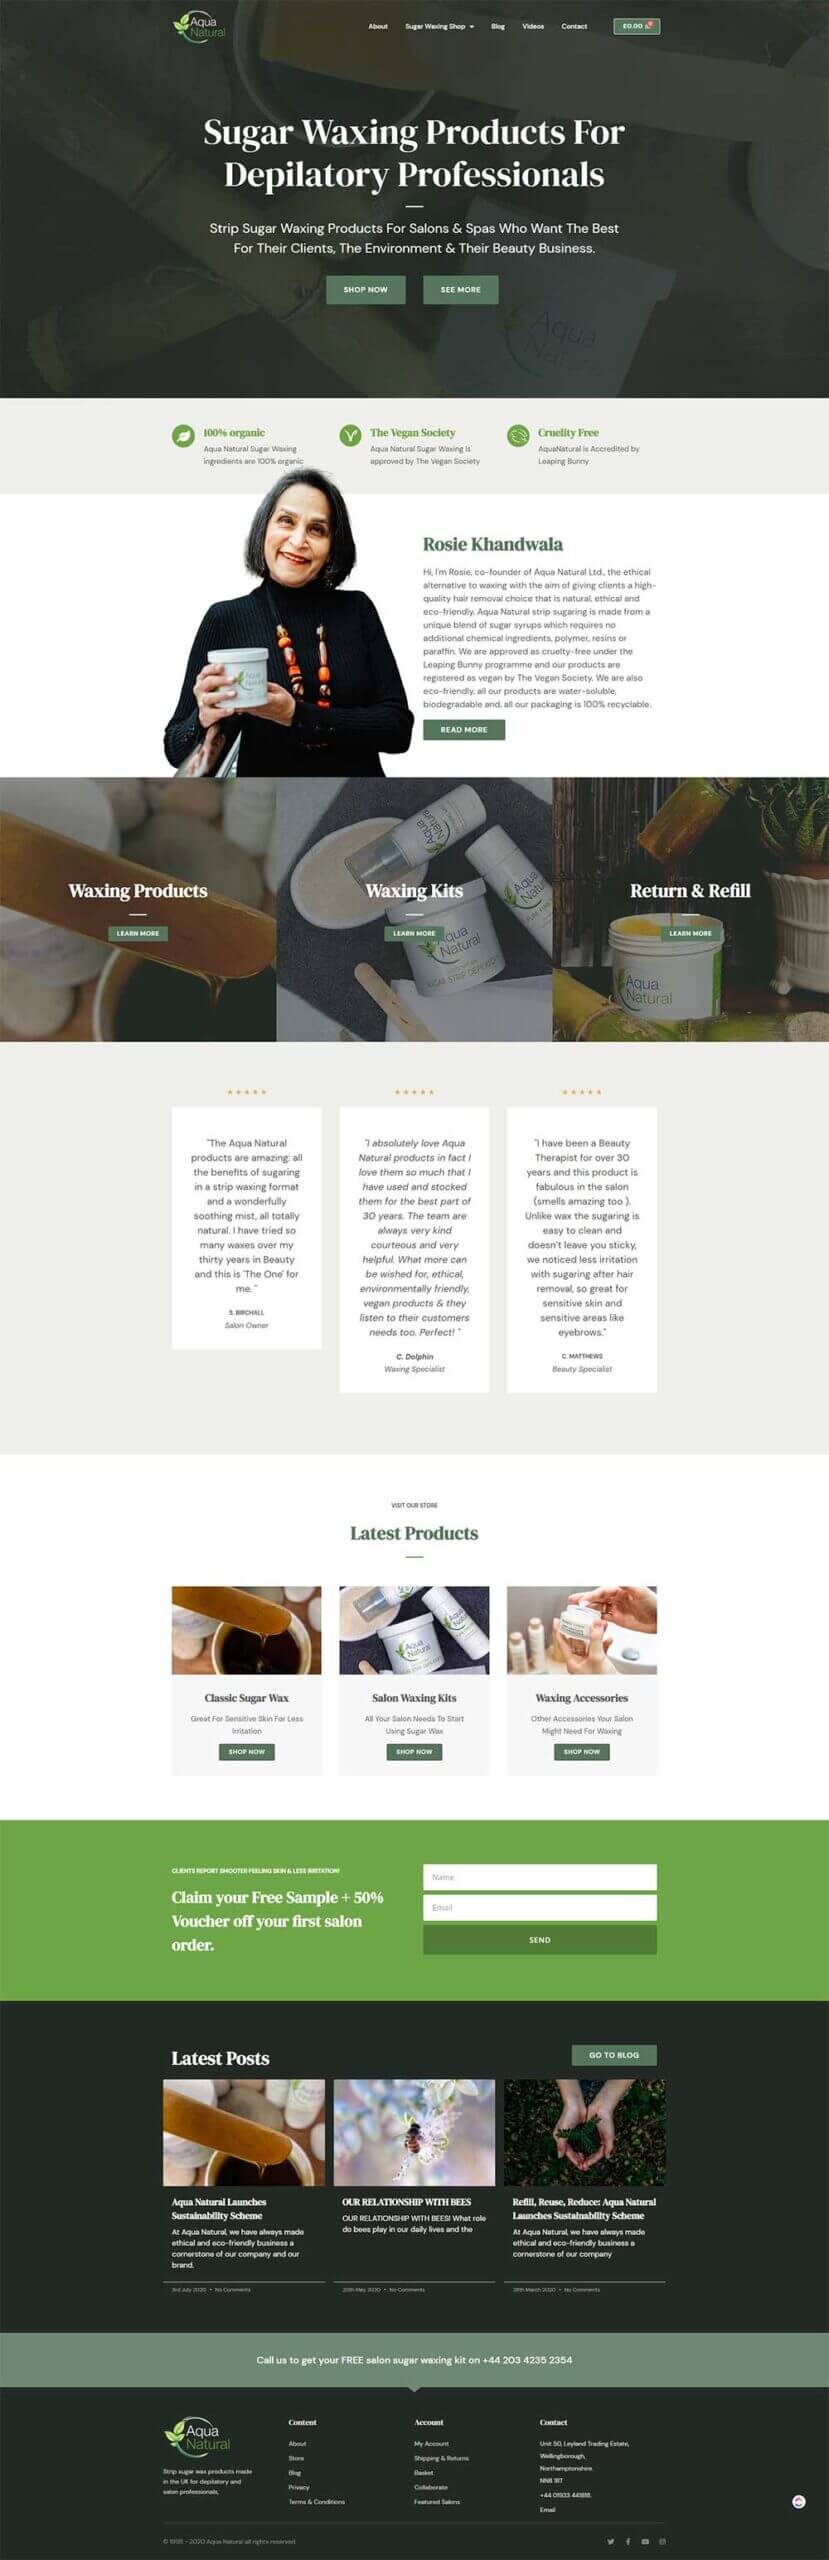 Aqua Natural Sugar waxing homepage